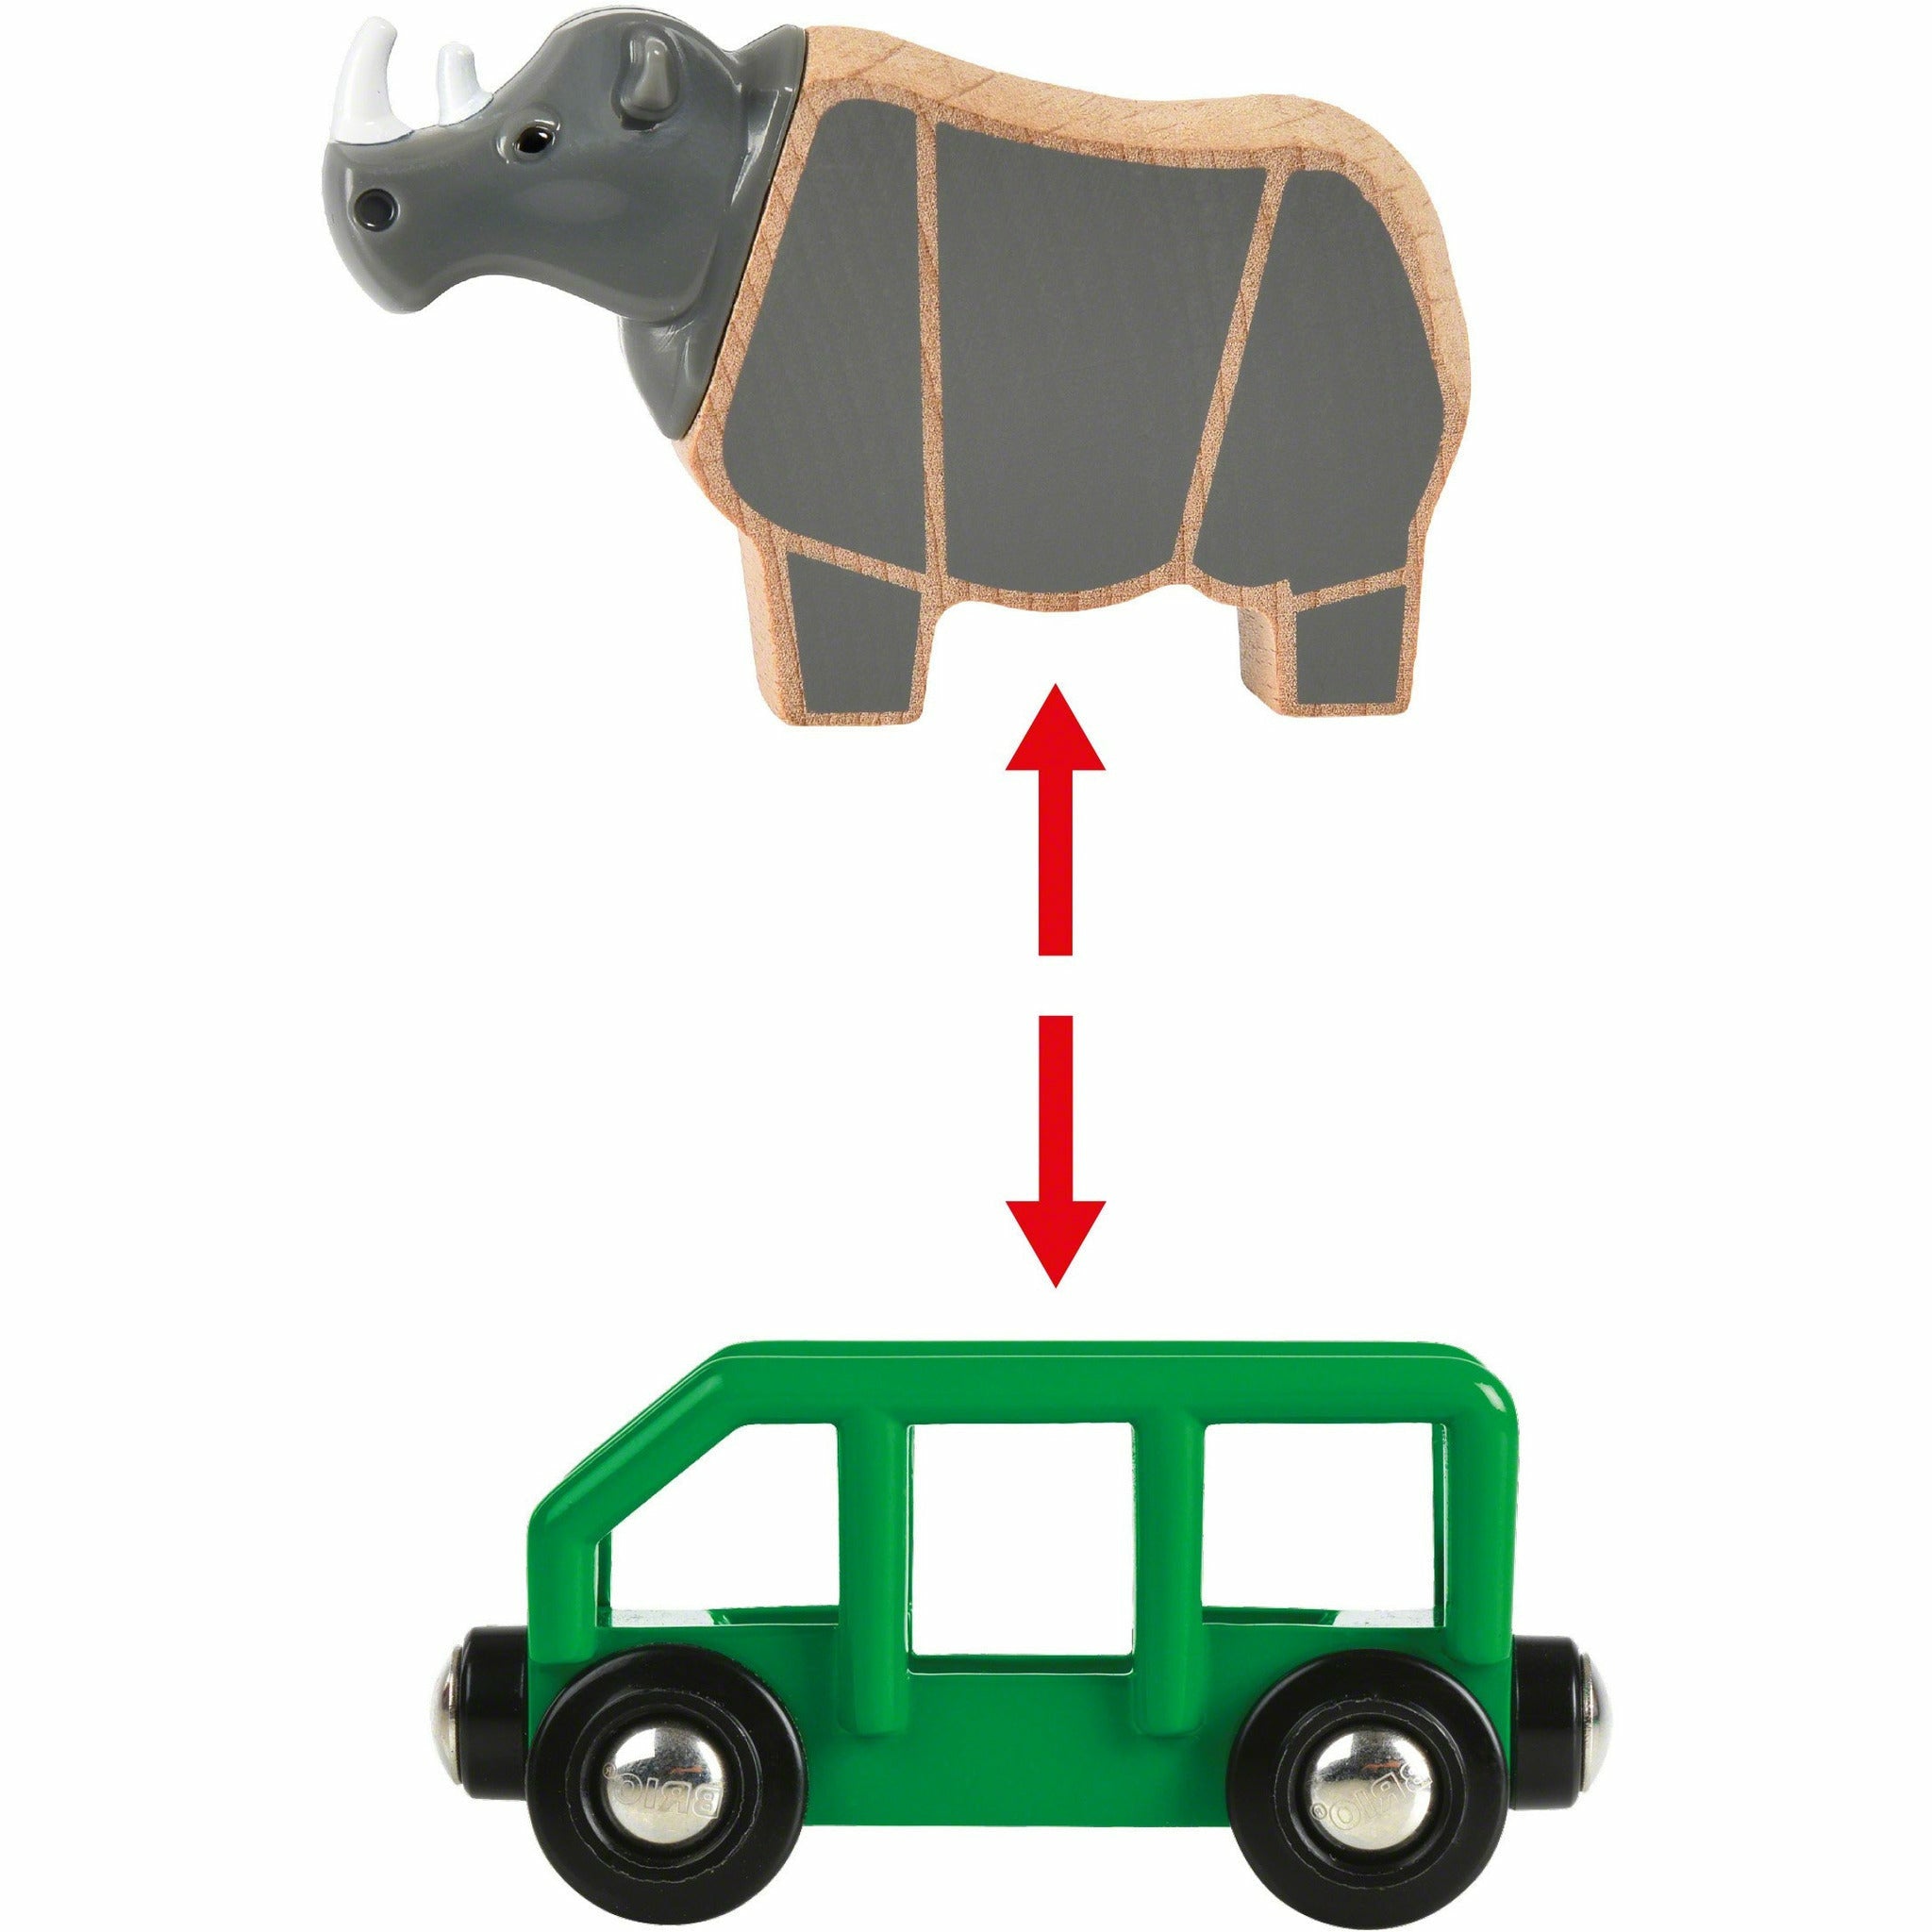 BRIO | Safari-Zug mit Nashorn